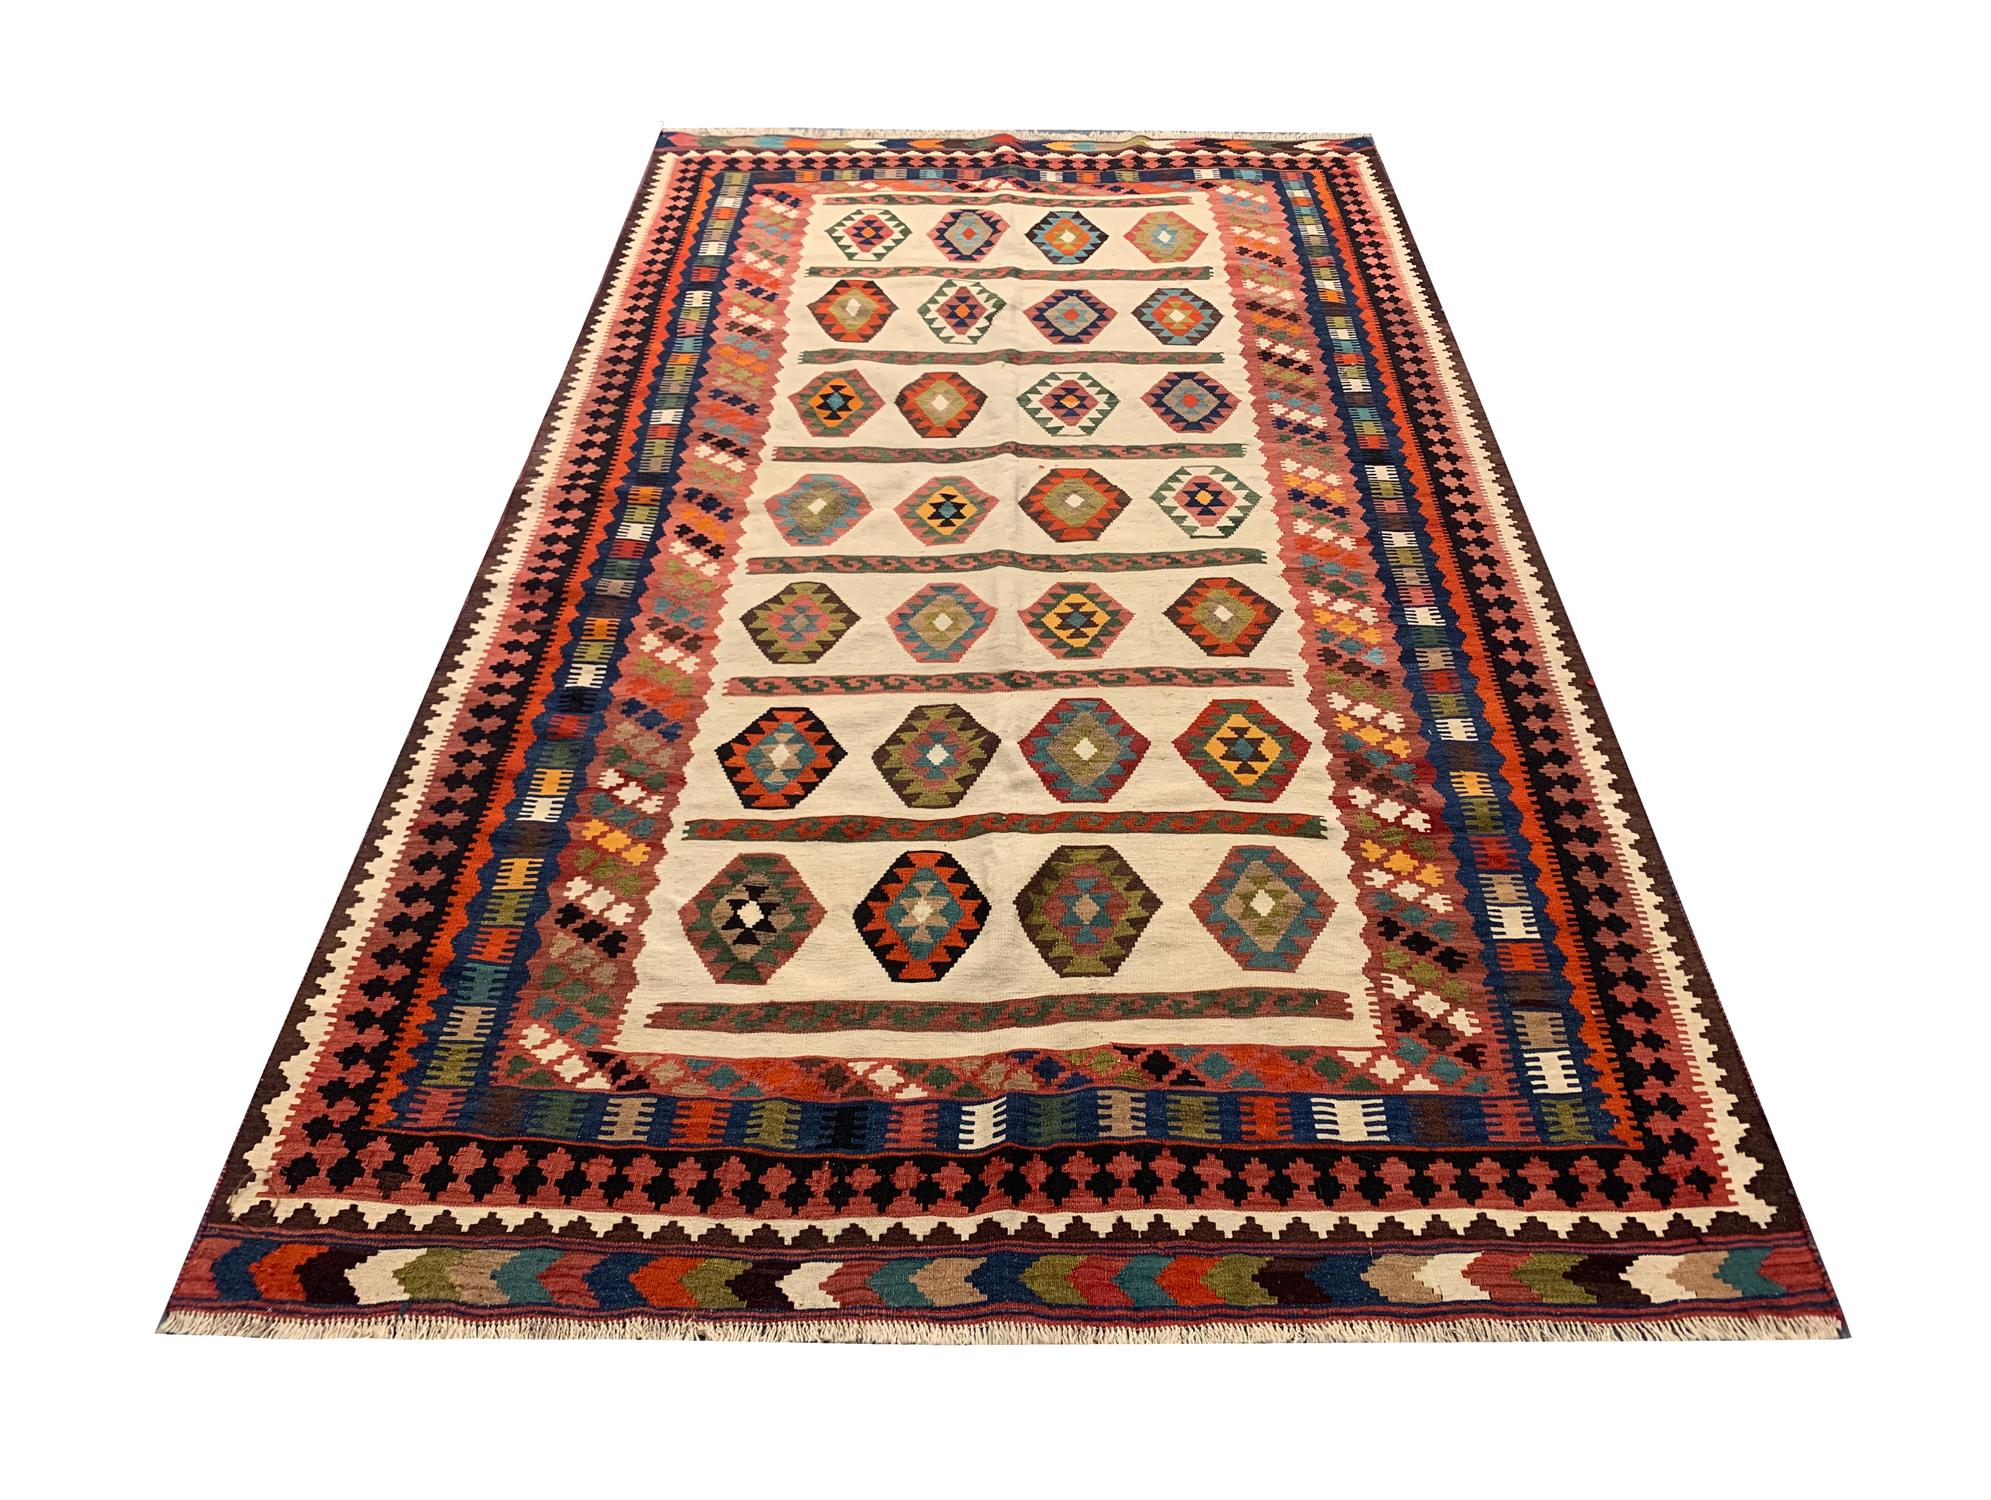 Dieser Teppich aus feiner Wolle hat ein kühnes geometrisches Stammesmotiv mit Akzenten in Grün, Rosa, Orange und Blau auf einem cremefarbenen Hintergrund und einer dicken Schichtbordüre, die aus sich wiederholenden Mustern besteht. Sowohl die